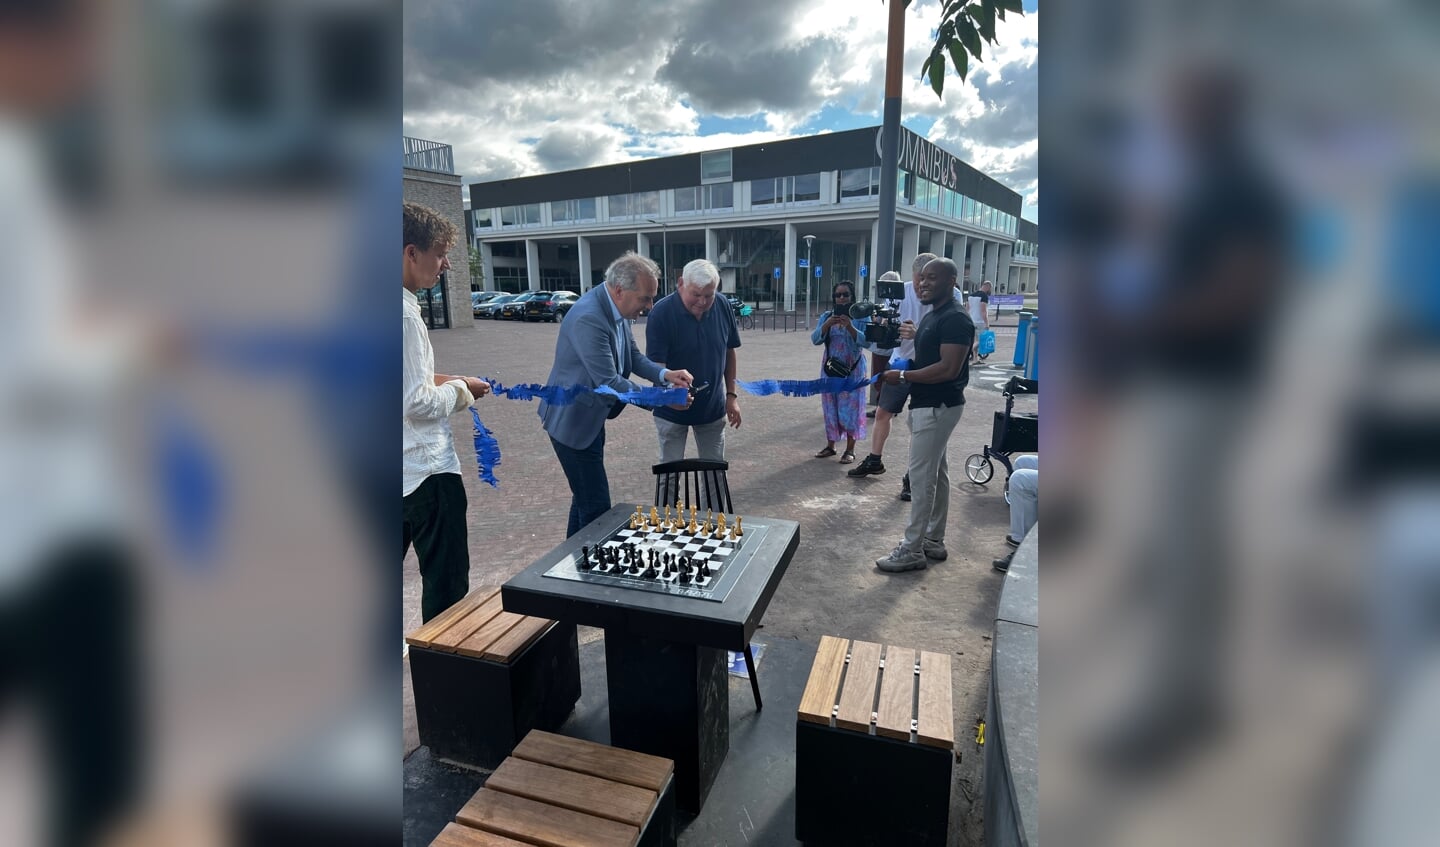 Wethouder Bob Roelofs 'opent' de eerste openbare schaaktafel. 